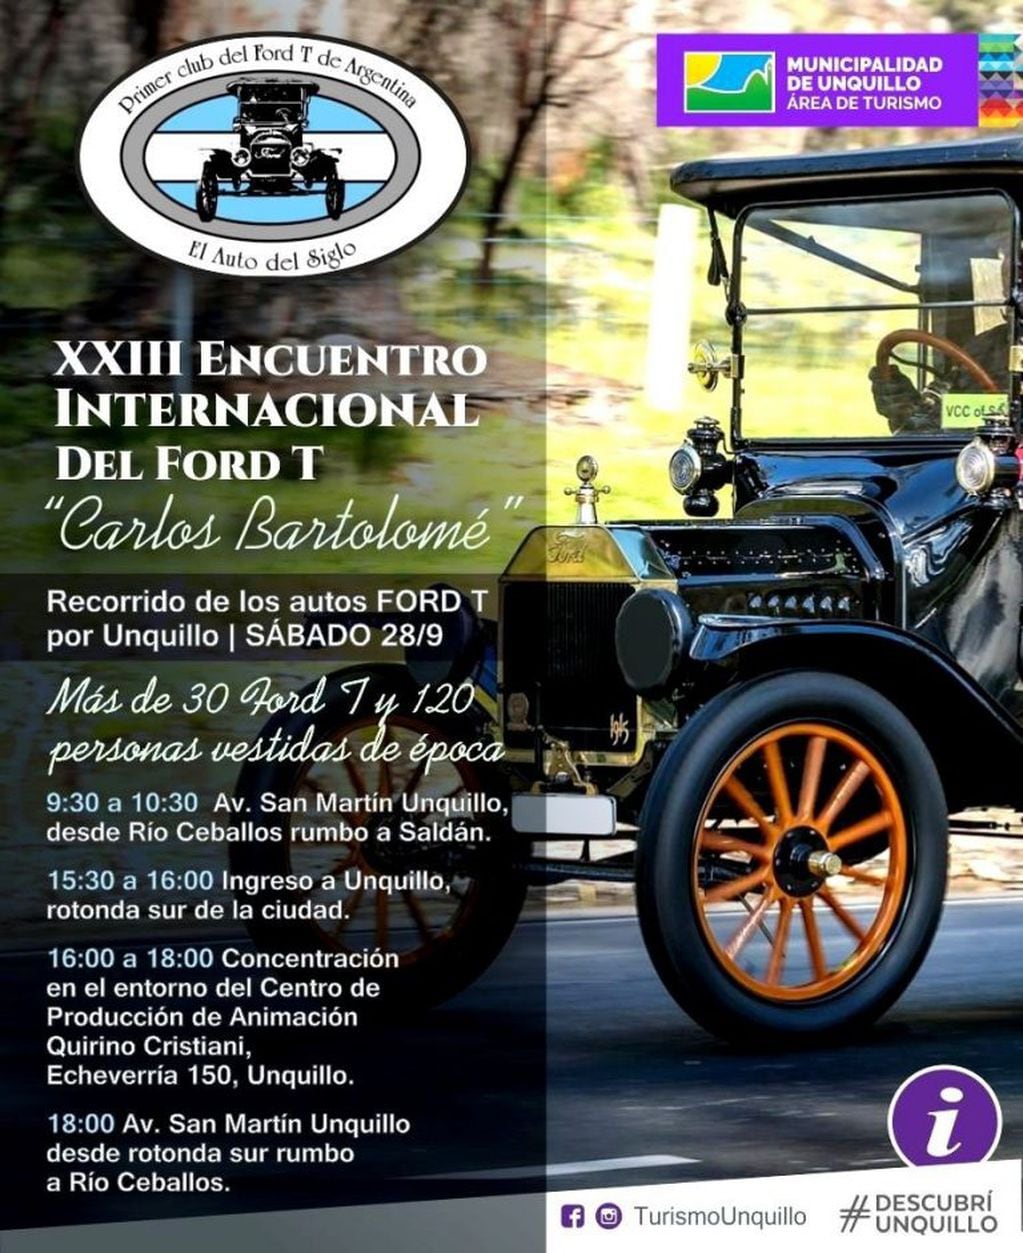 XXIII Encuentro Internacional del Fort T "Carlos Bartolomé" en Unquillo.